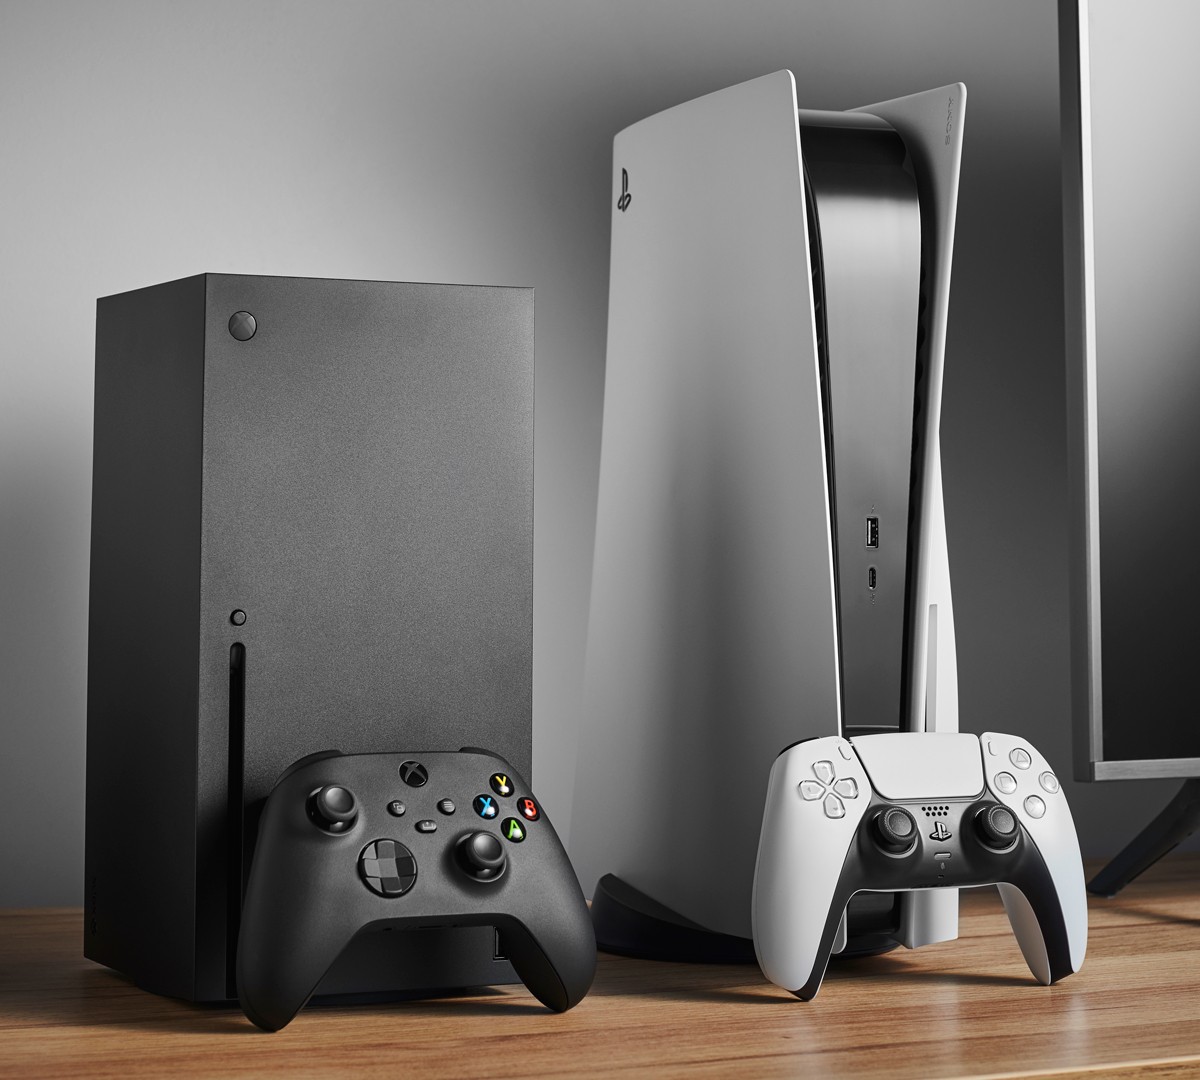 Microsoft planeia lançar em 2024 nova versão da Xbox Series X